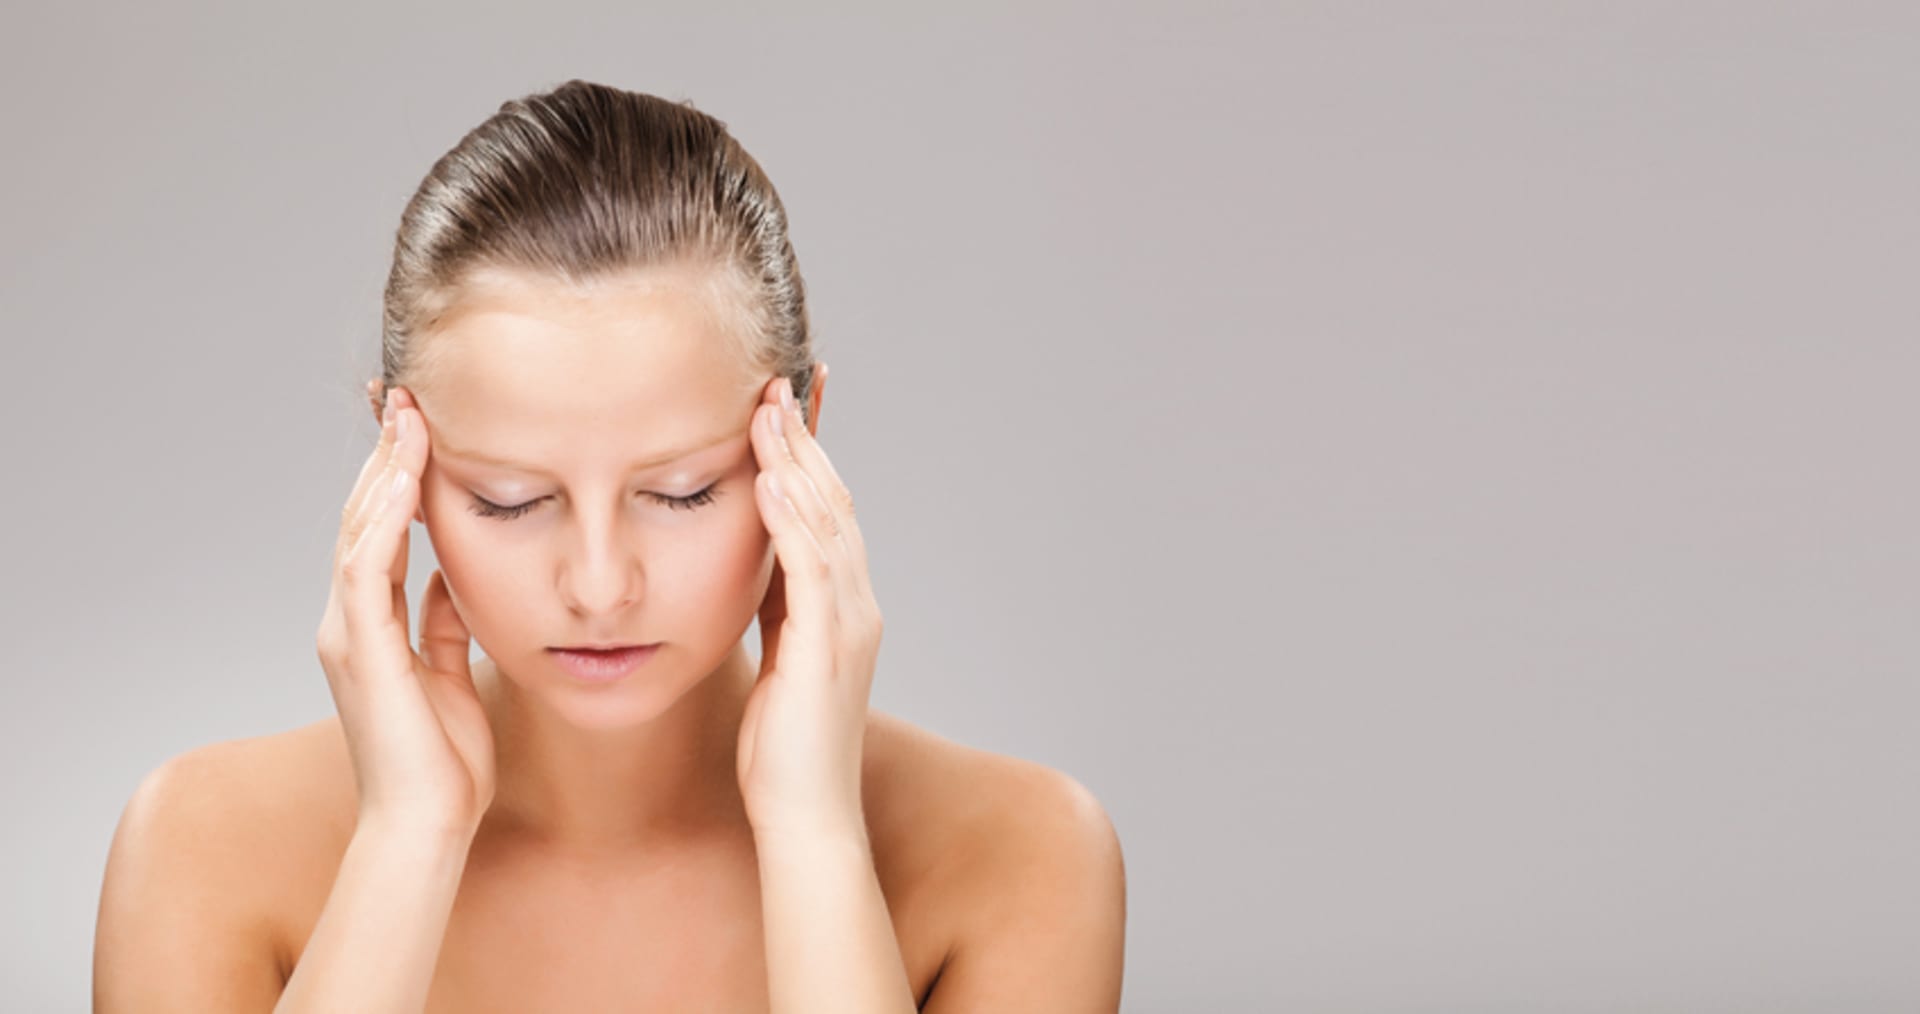 Bolest způsobená migrénou zpravidla vždy ochromí veškerou naši činnost